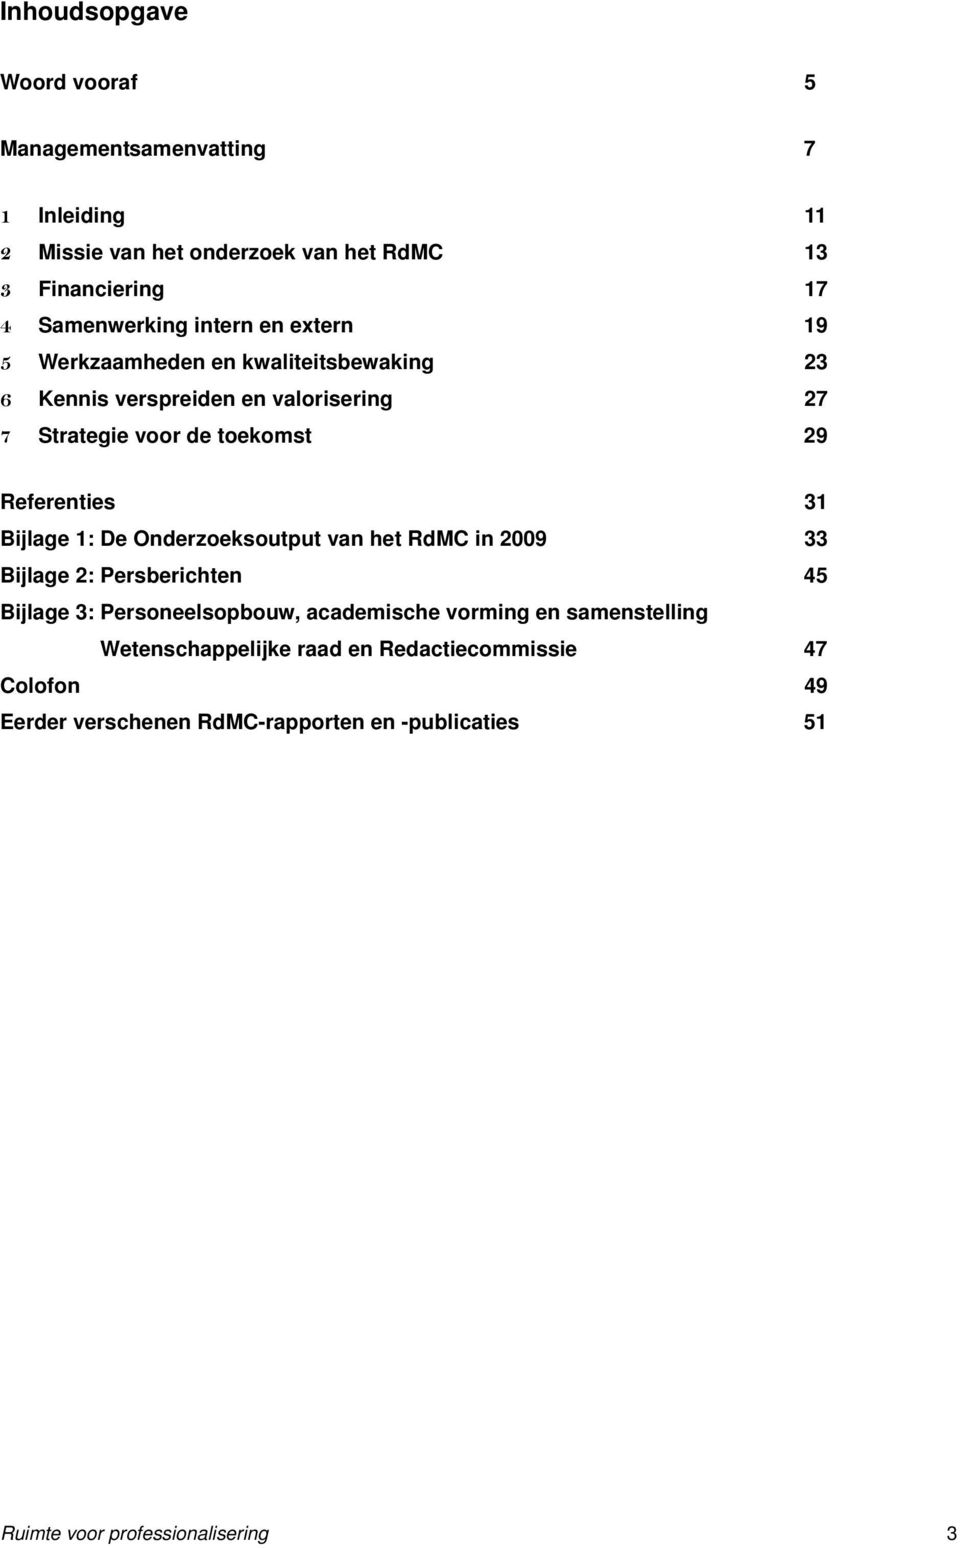 31 Bijlage 1: De Onderzoeksoutput van het RdMC in 2009 33 Bijlage 2: Persberichten 45 Bijlage 3: Personeelsopbouw, academische vorming en